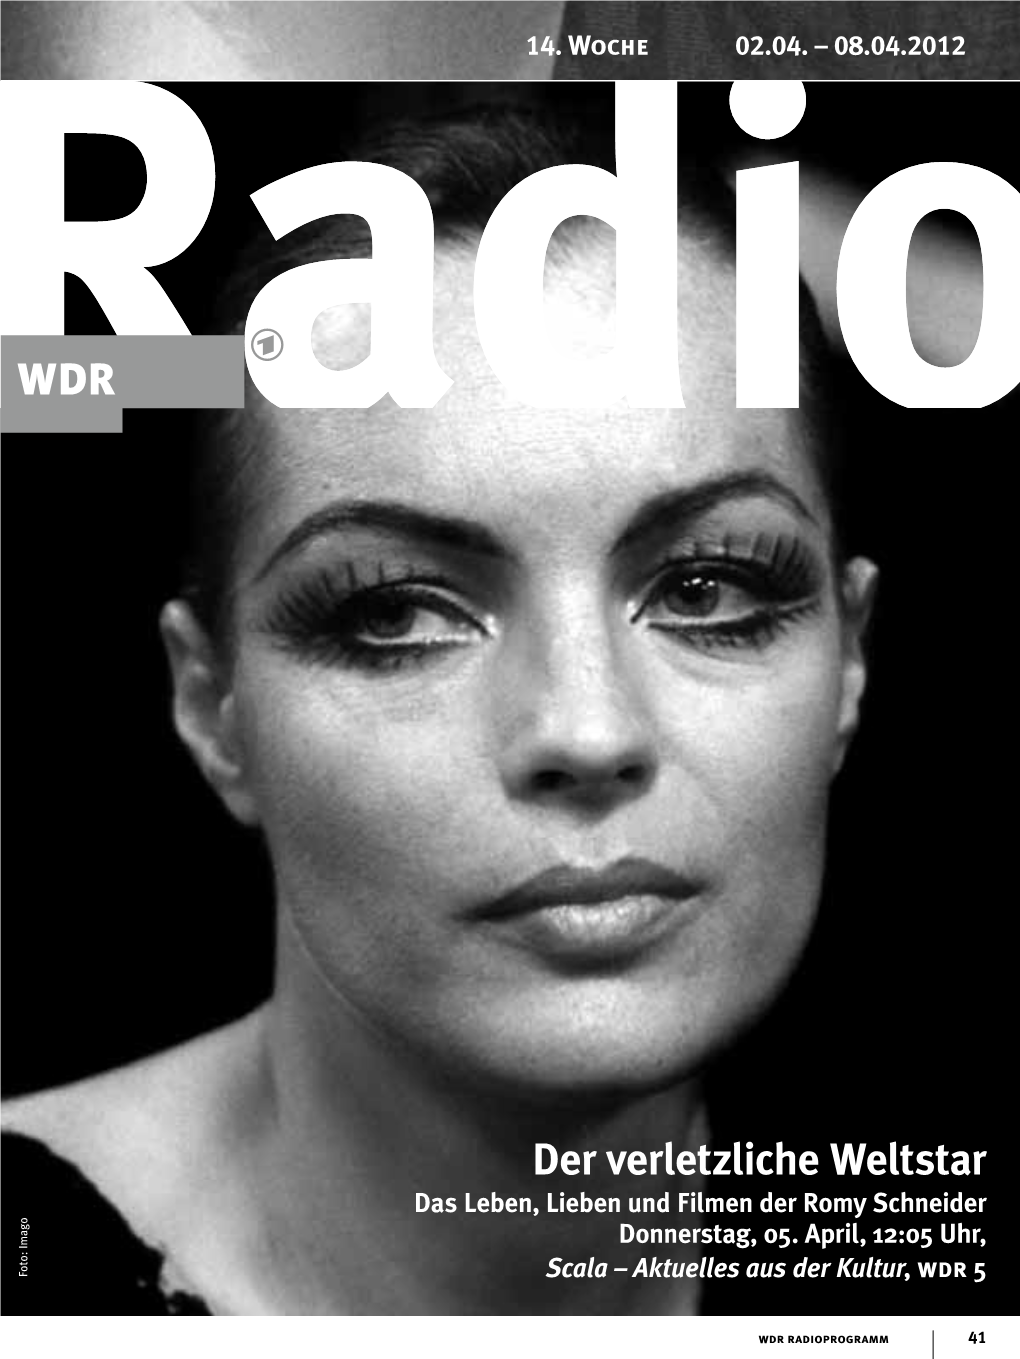 Der Verletzliche Weltstar Das Leben, Lieben Und Filmen Der Romy Schneider Donnerstag, 05